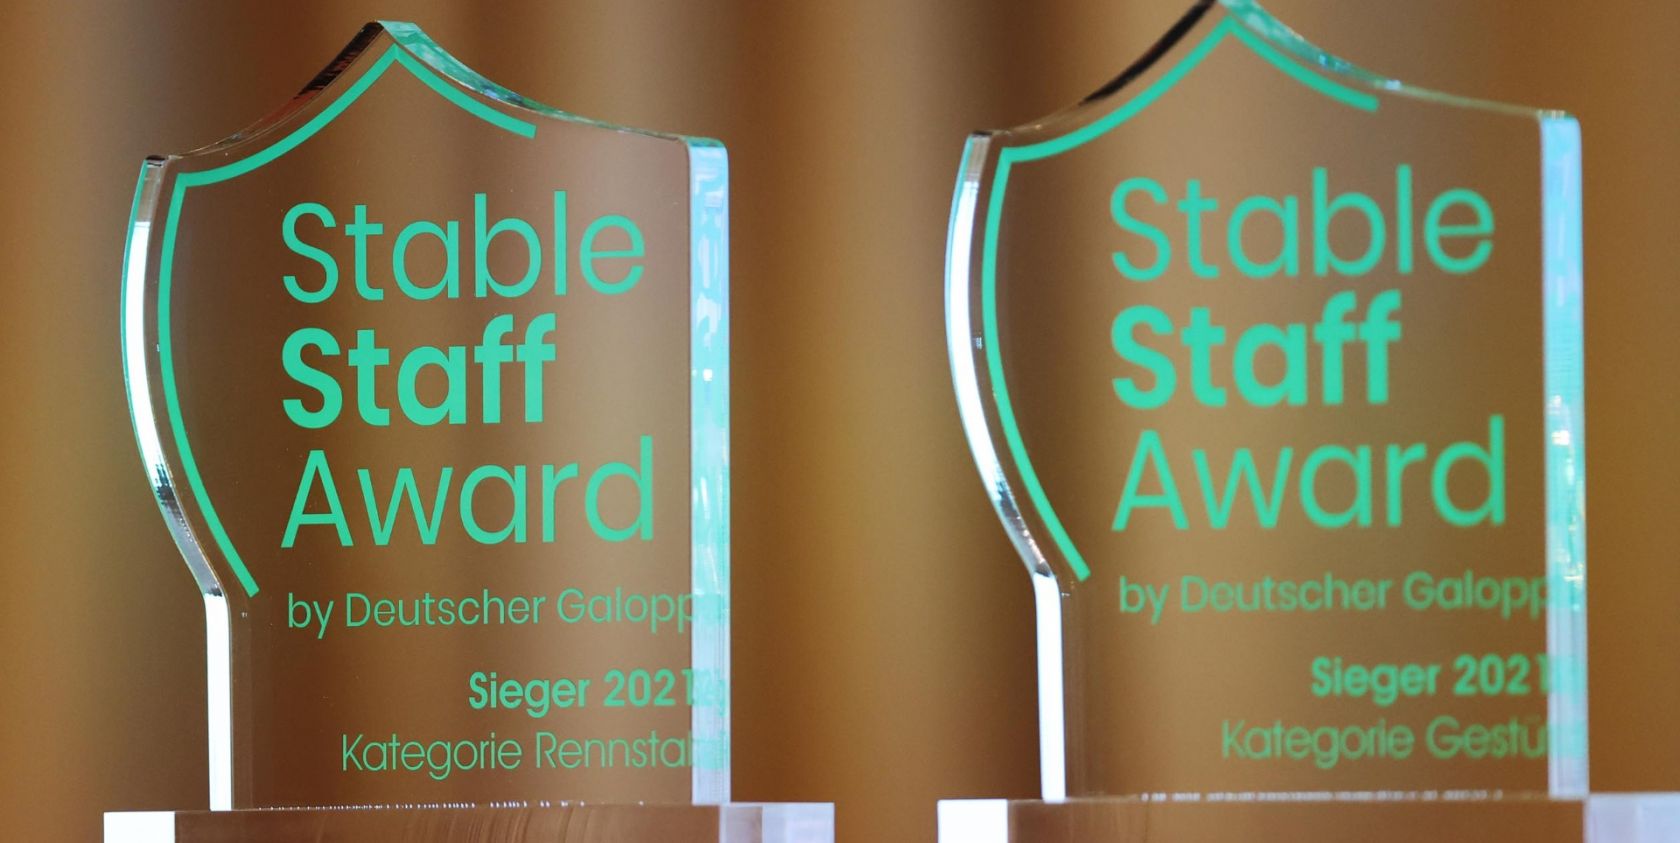 Stable Staff Award by Deutscher Galopp geht in die zweite Runde